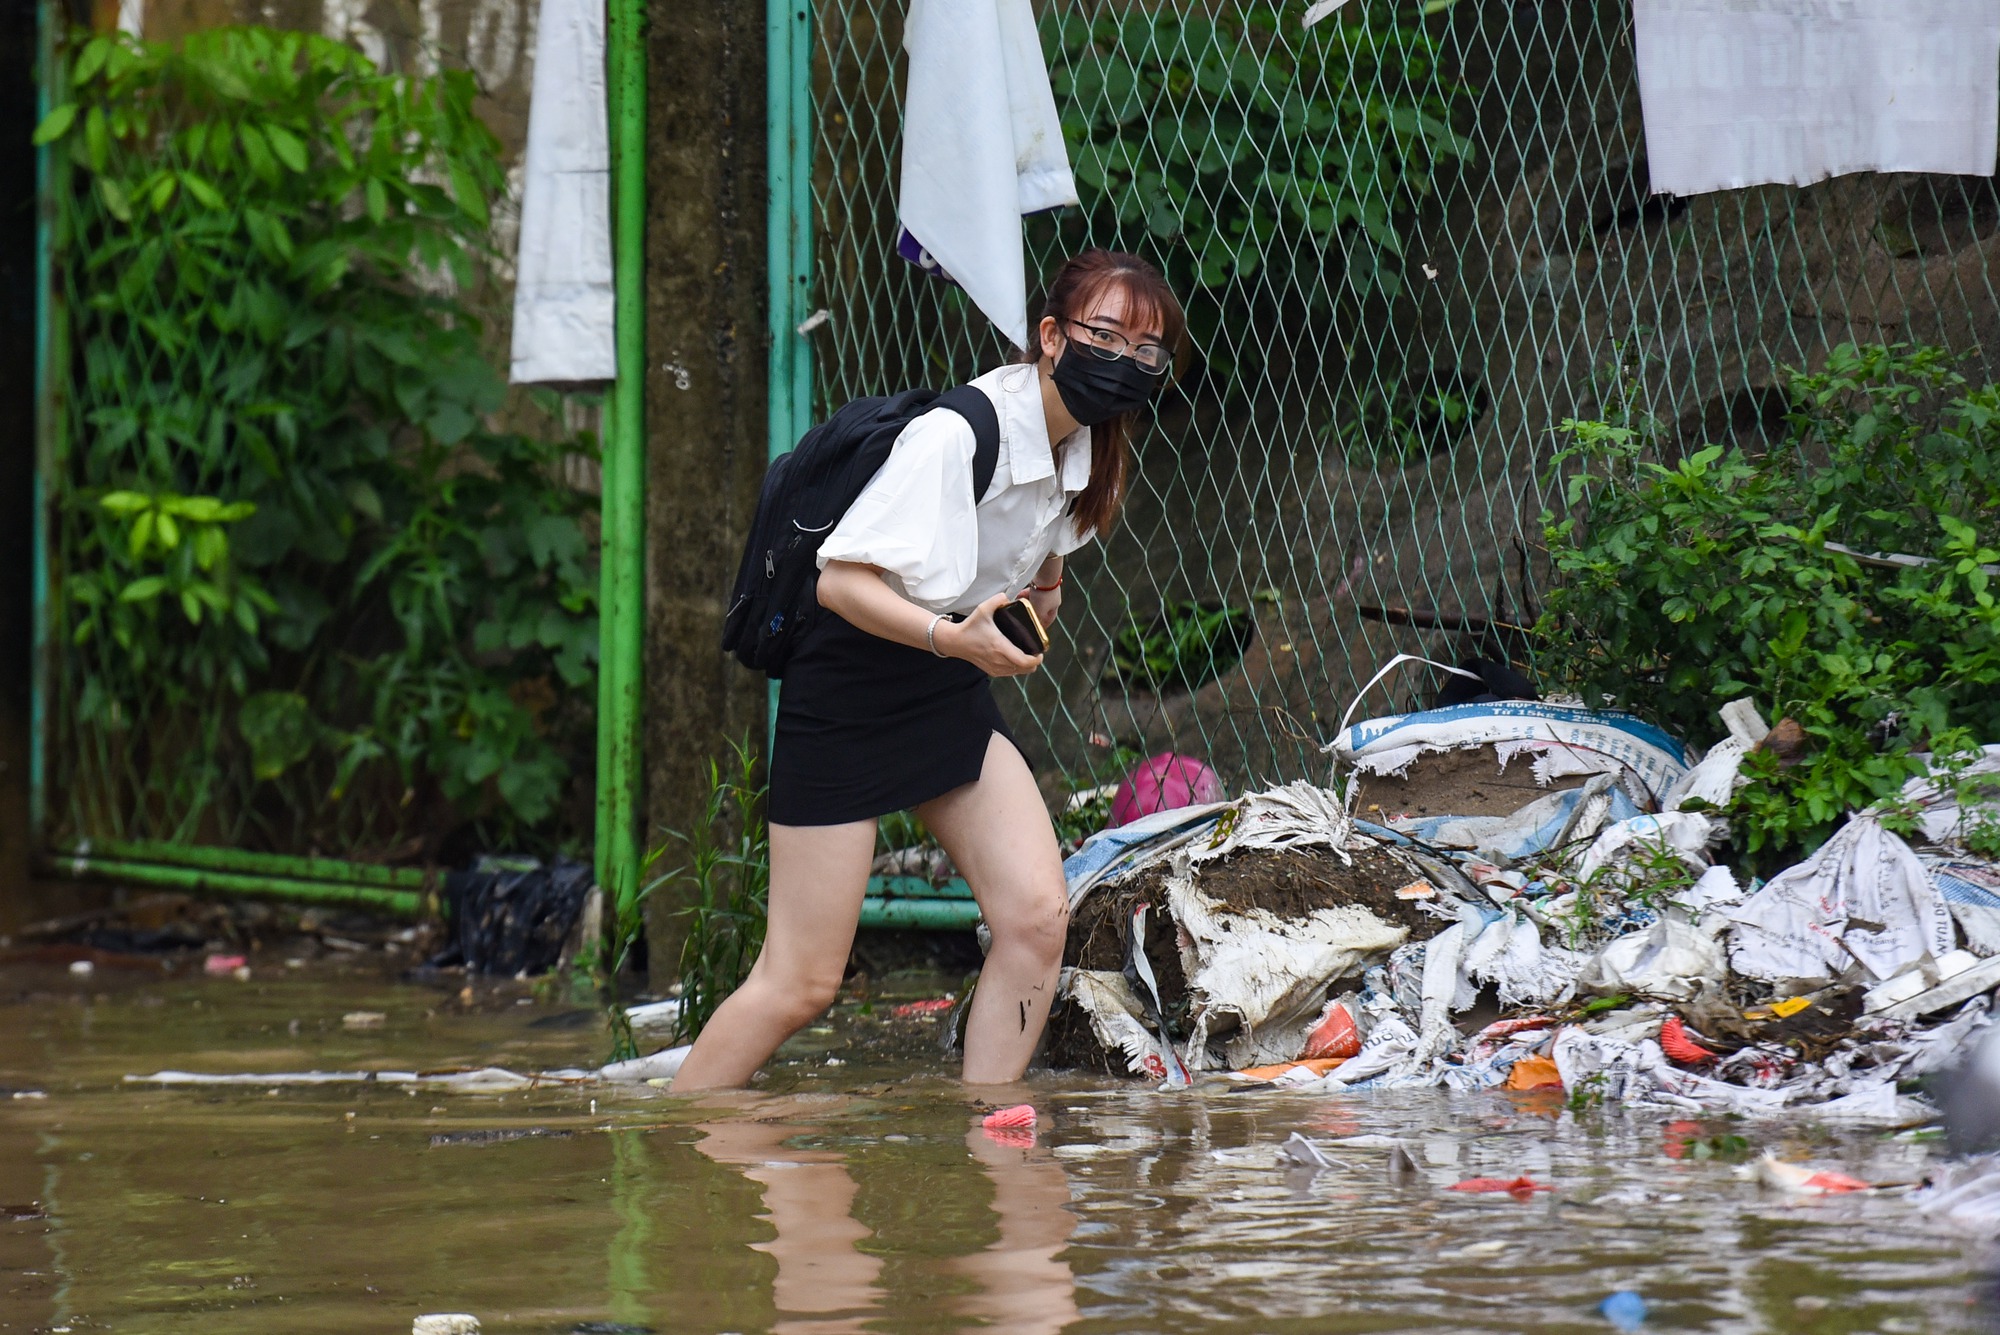 Đường gom đại lộ Thăng Long chìm trong biển nước sau trận mưa lớn - Ảnh 11.